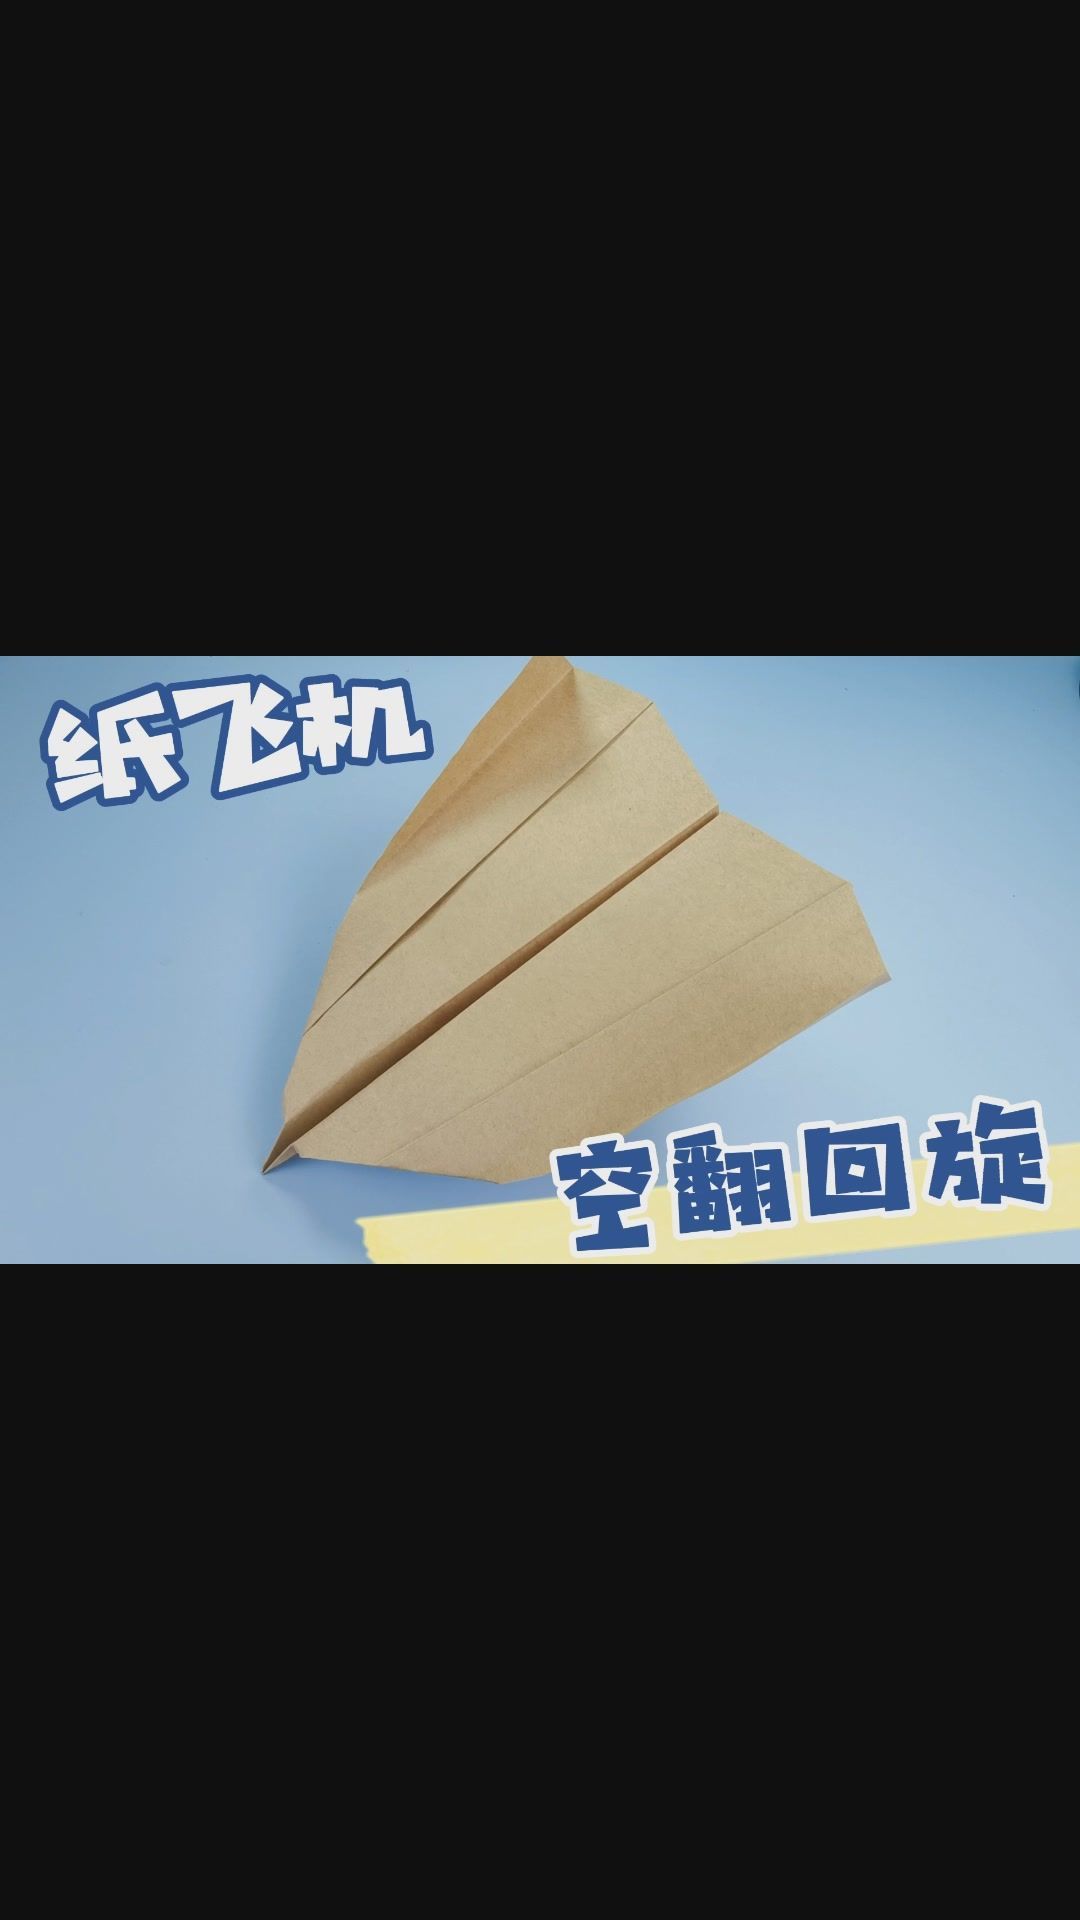 [纸飞机怎么登录不了]纸飞机为什么登不上去